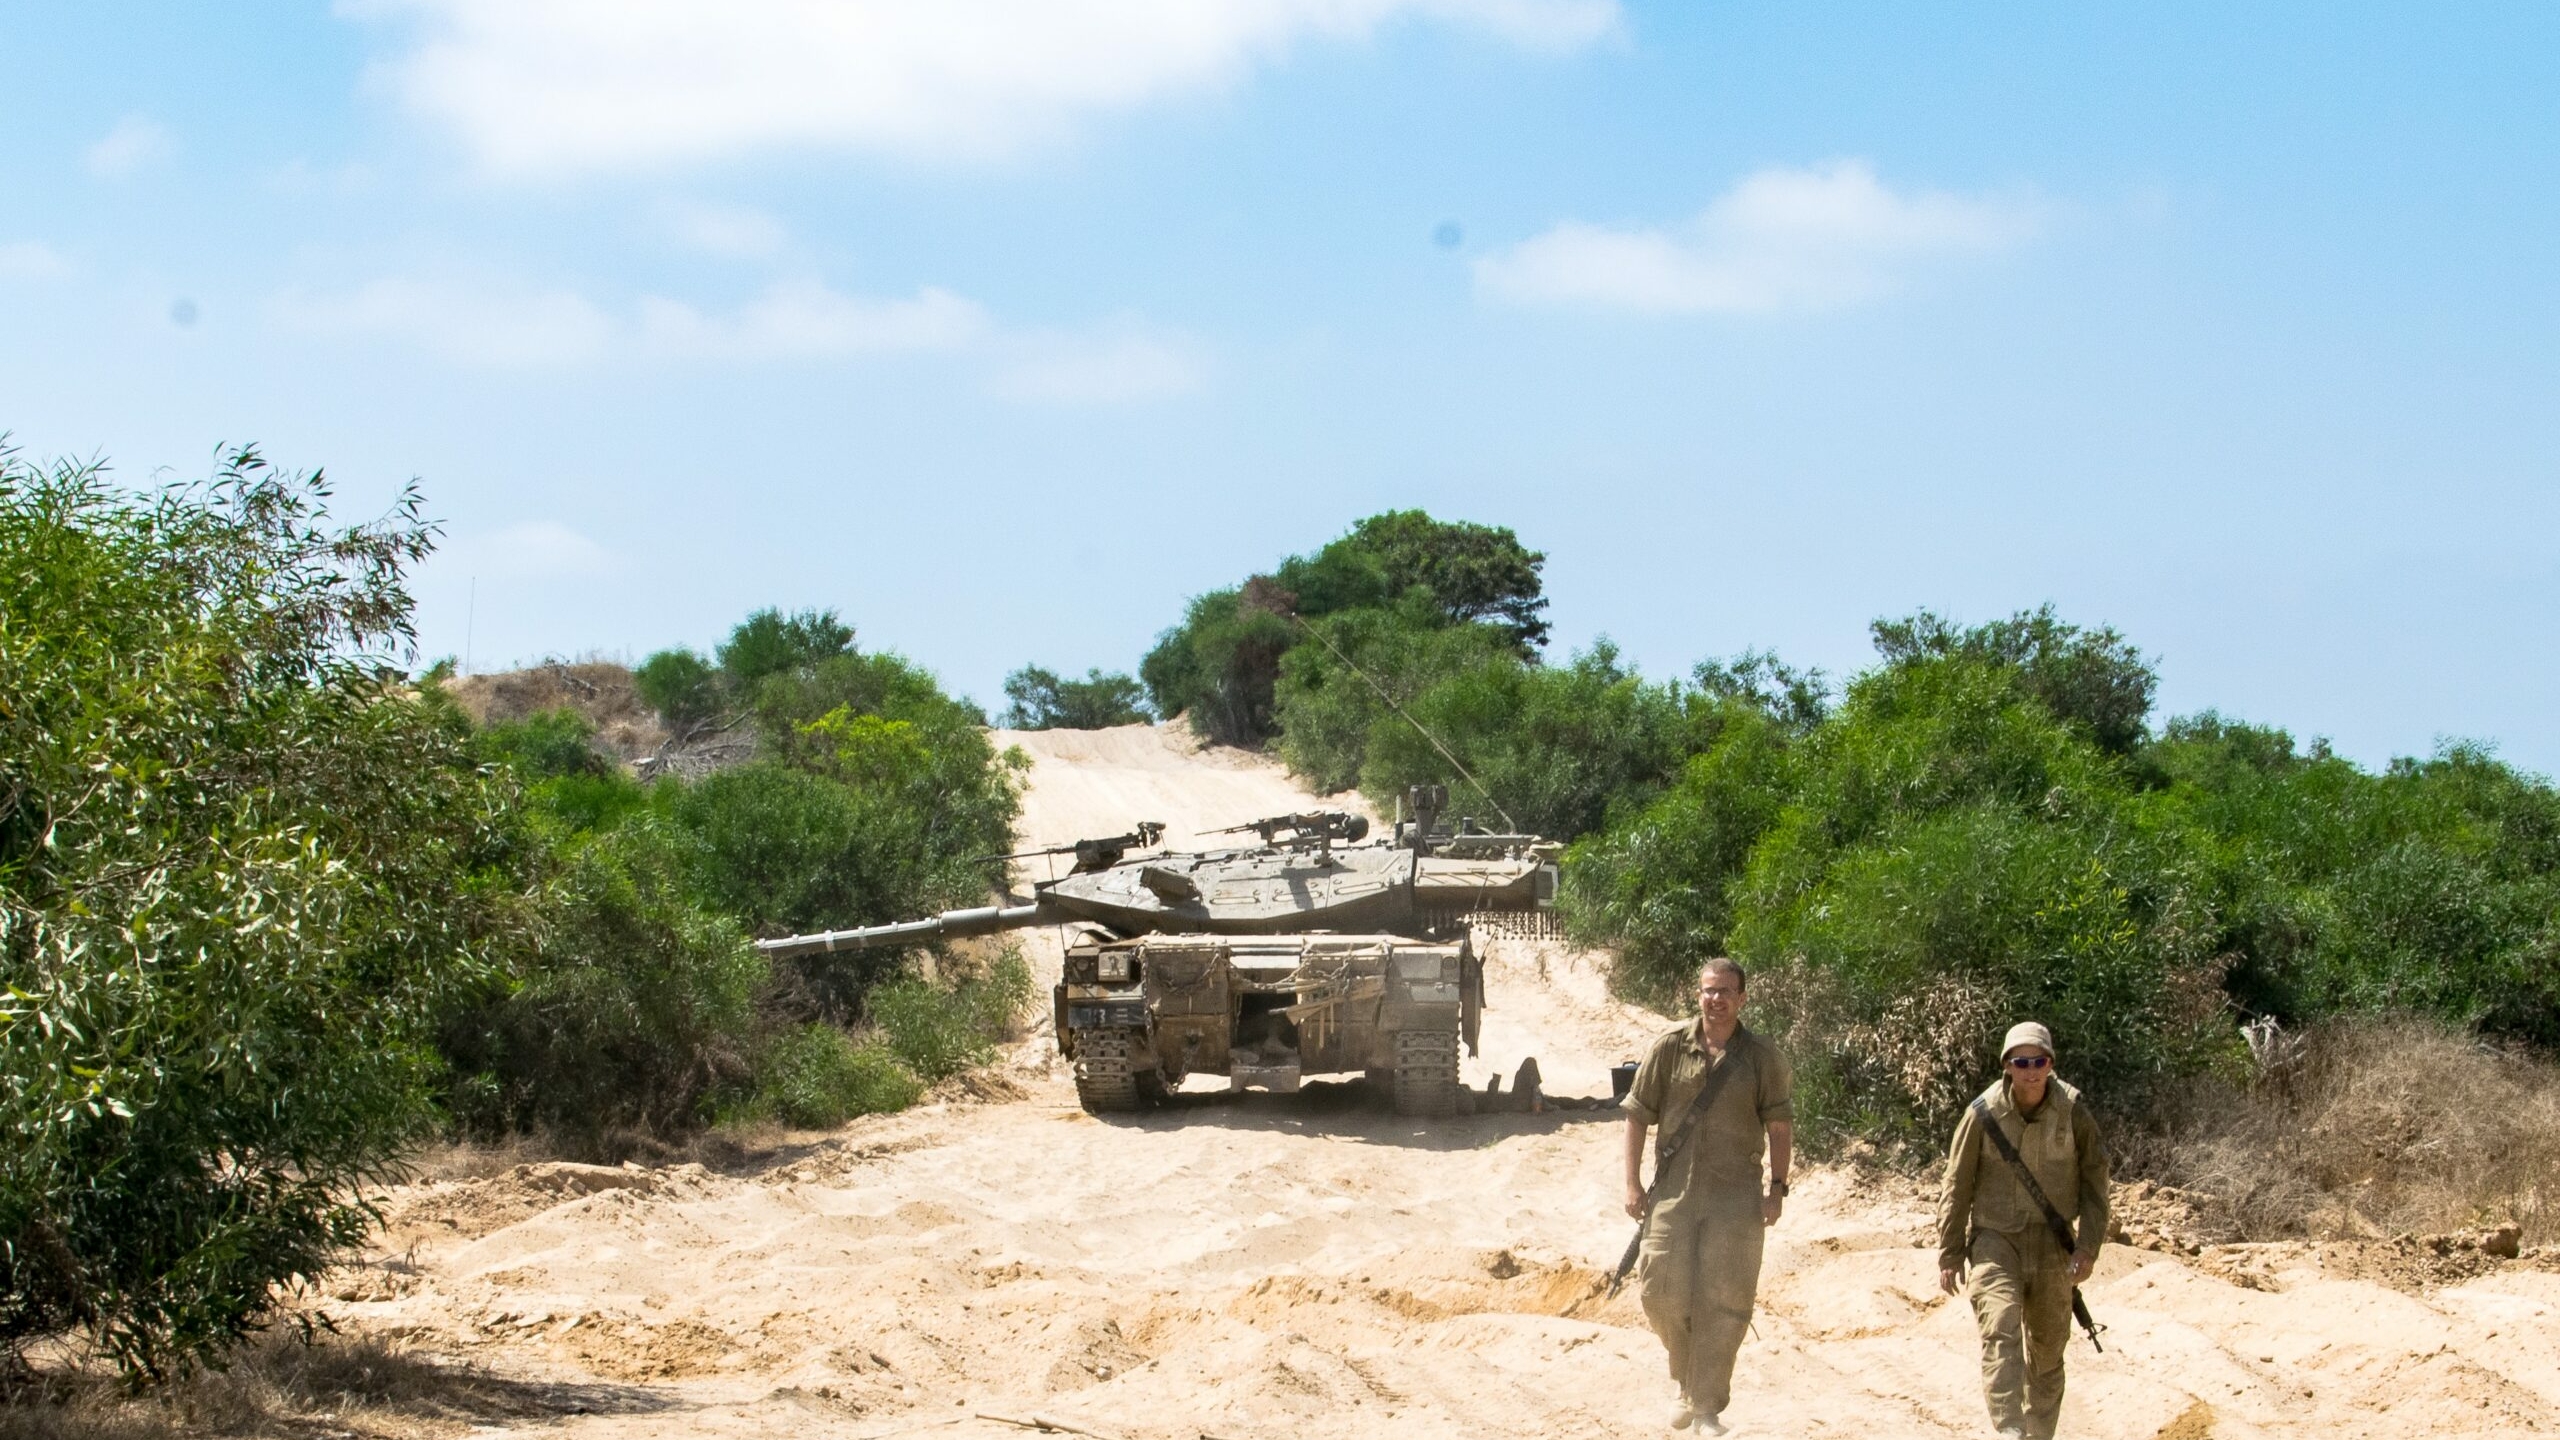 У Израиля заканчиваются силы, и «Хезболлах» осознает его «ужас»